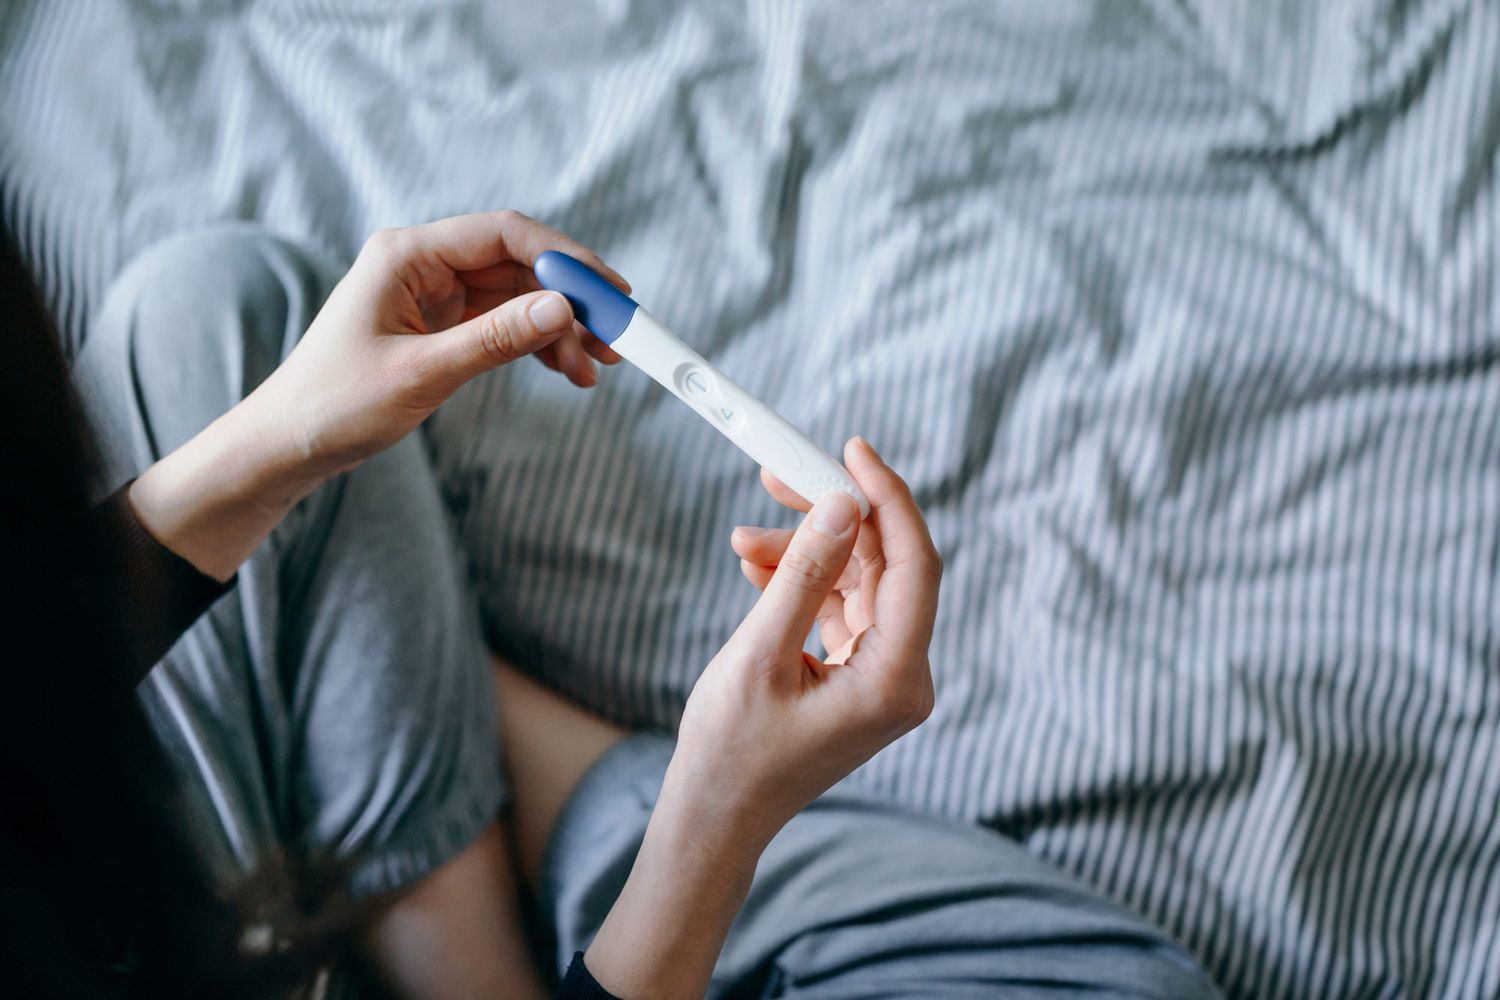 Causas comunes de infertilidad en mujeres y hombres